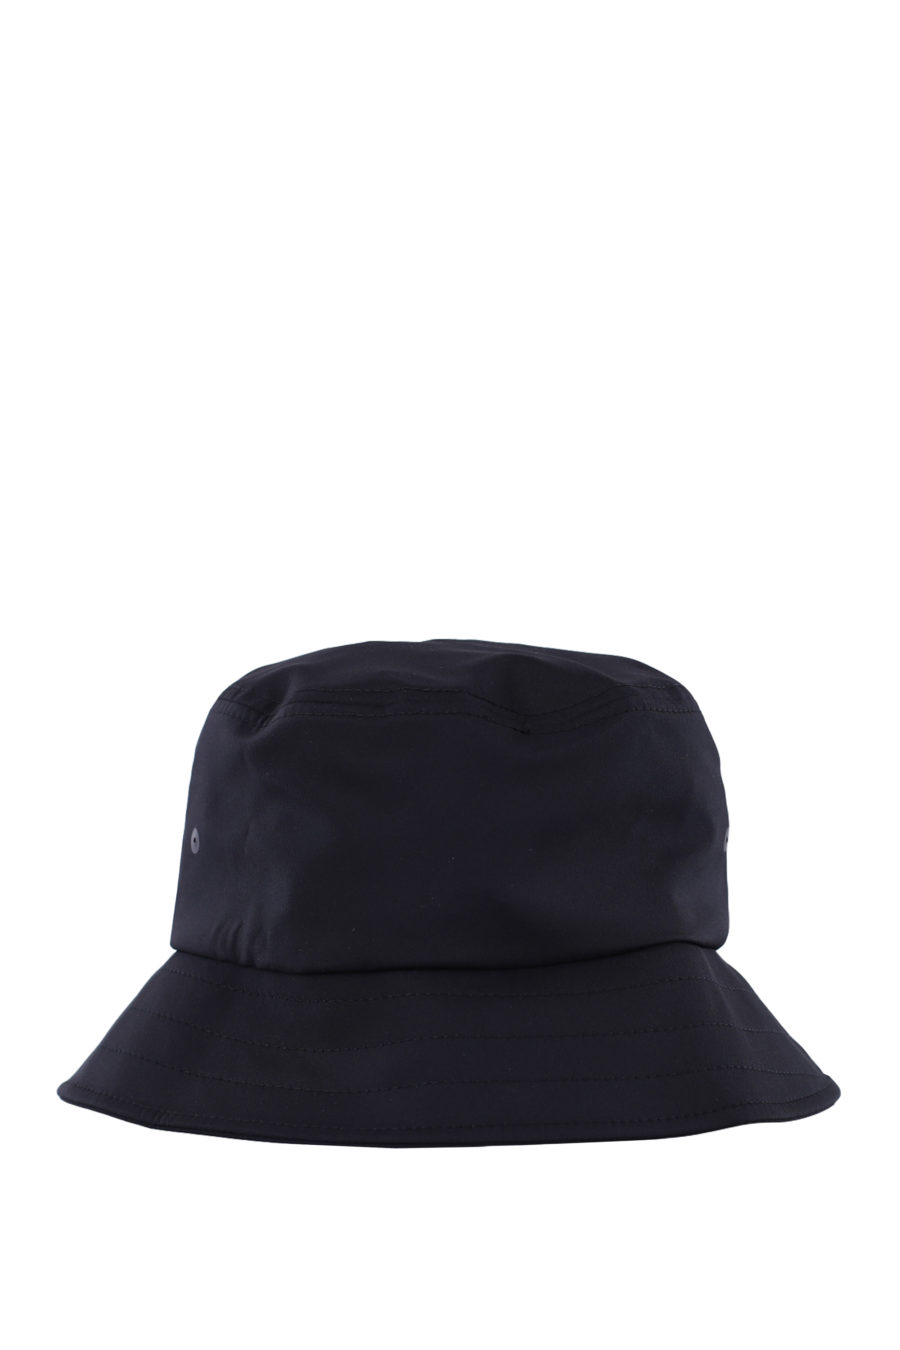 Sombrero de pescador negro reversible con logo blanco - IMG 0348